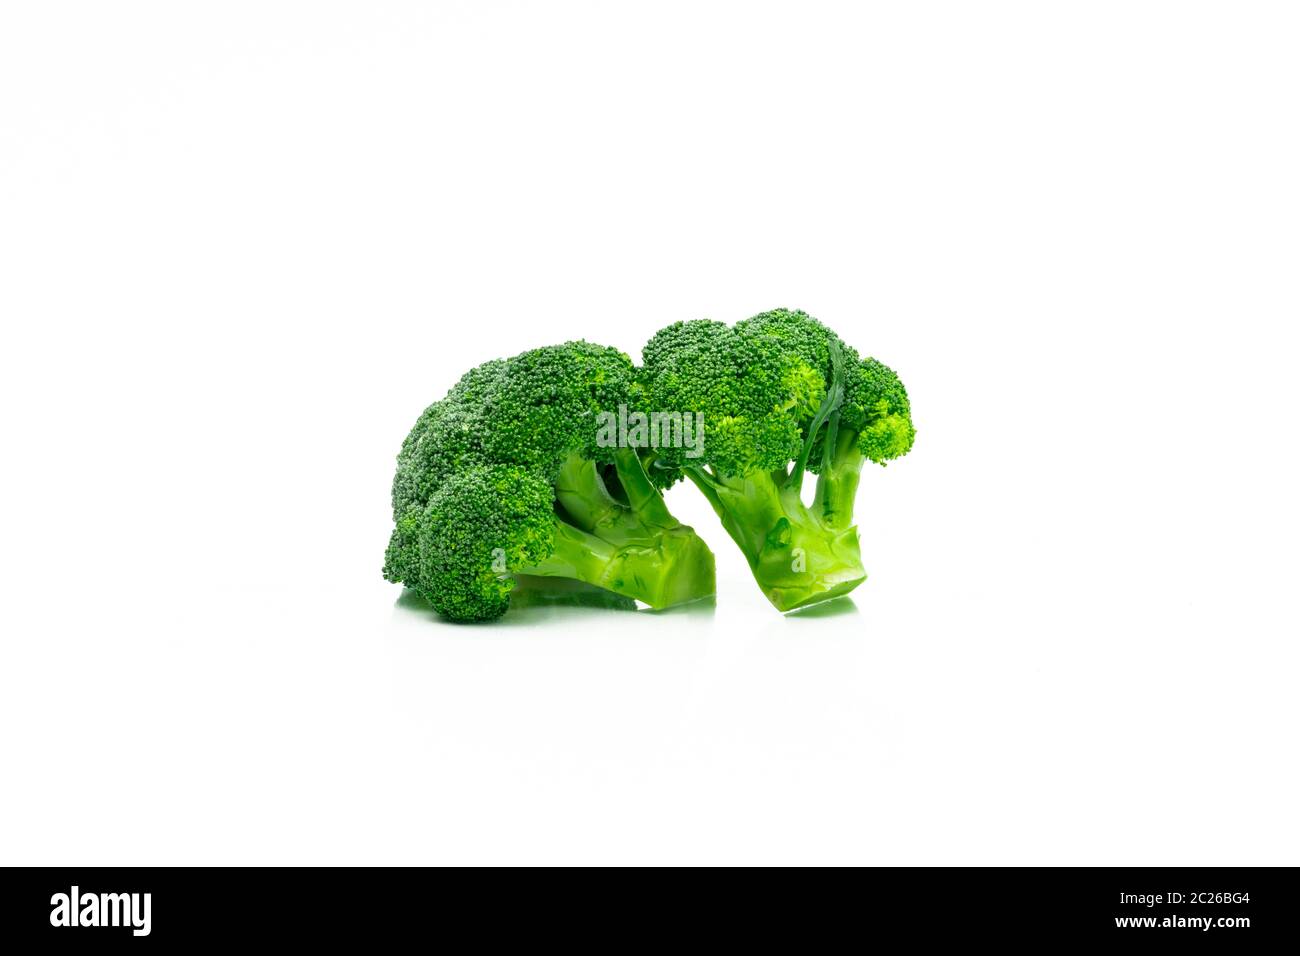 Satz von Green Brokkoli (Brassica oleracea). Gemüse natürliche Quelle von Beta-Carotin, Vitamin C, Vitamin K, Glasfaser Essen, Folsäure. Frischen Brokkoli Kohl Stockfoto